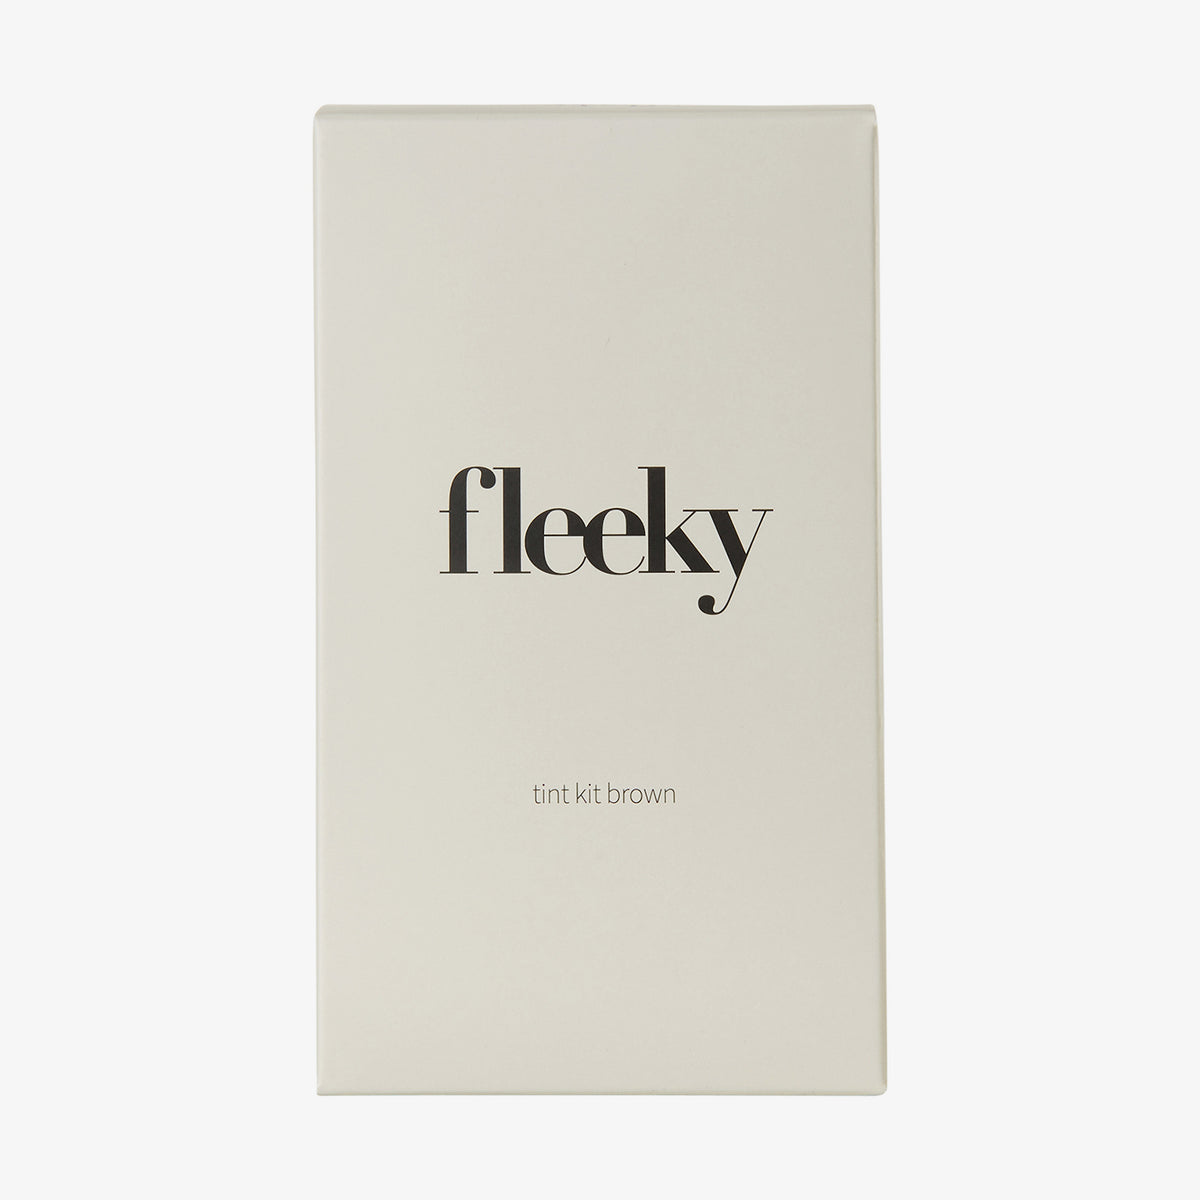 fleeky | Brow Tint Kit Brown